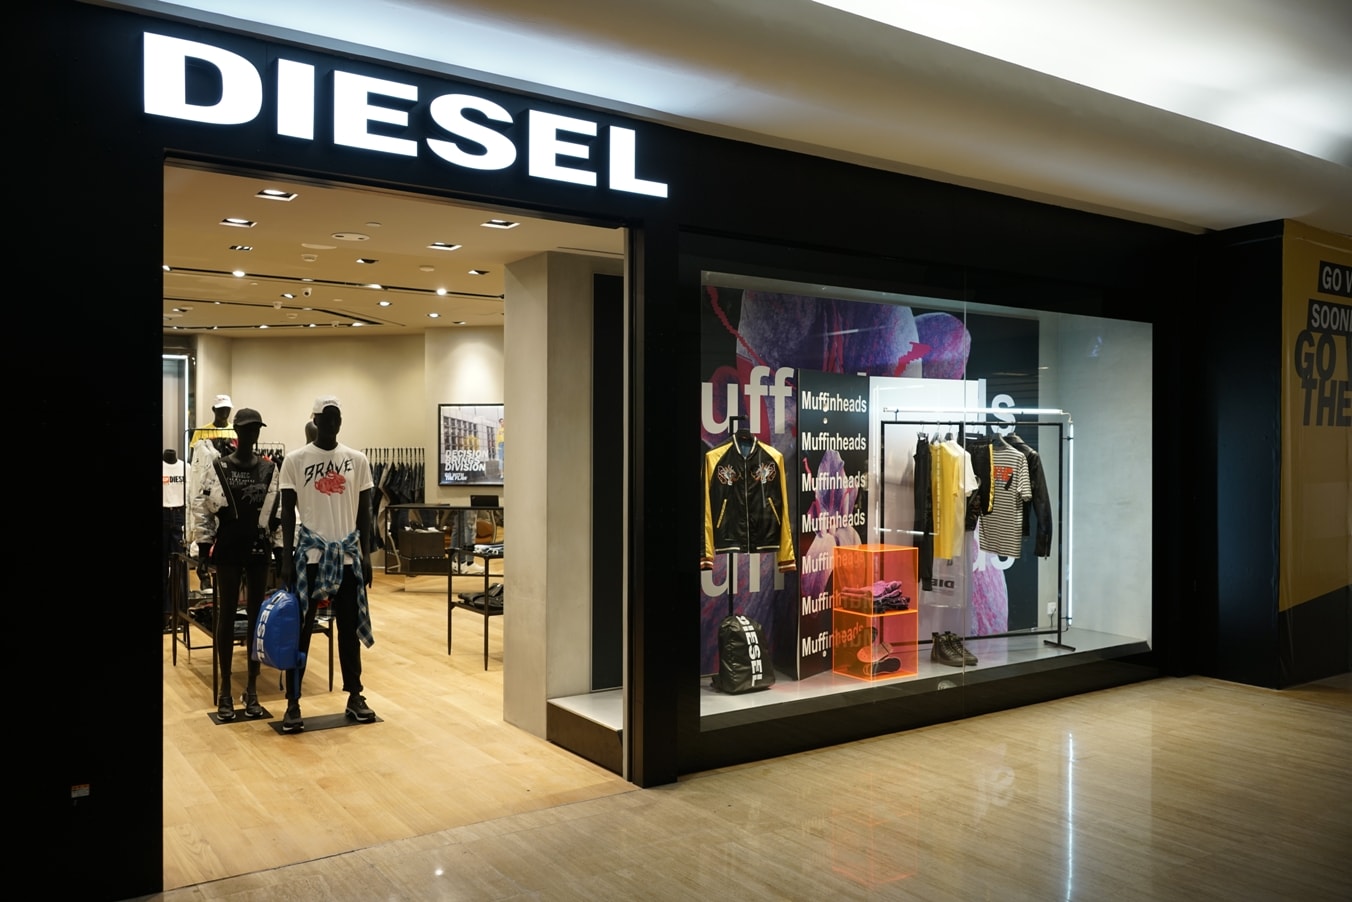 diesel clothing brand